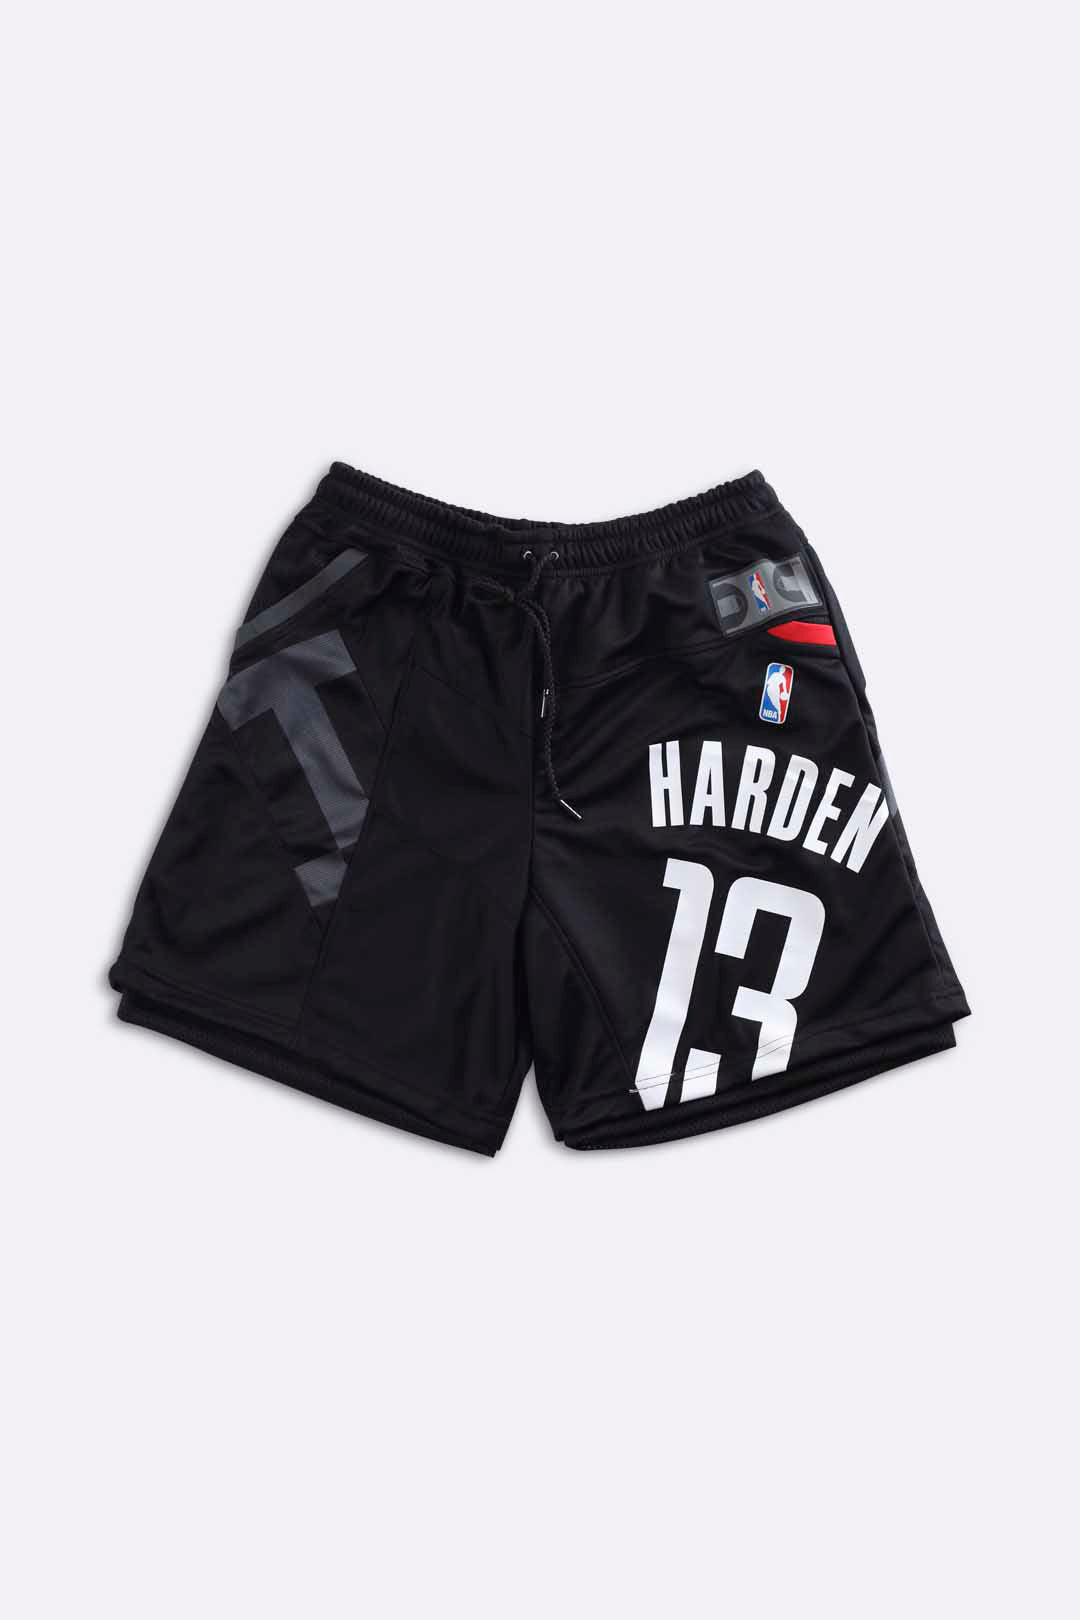 NBA Men's Shorts - Black - S